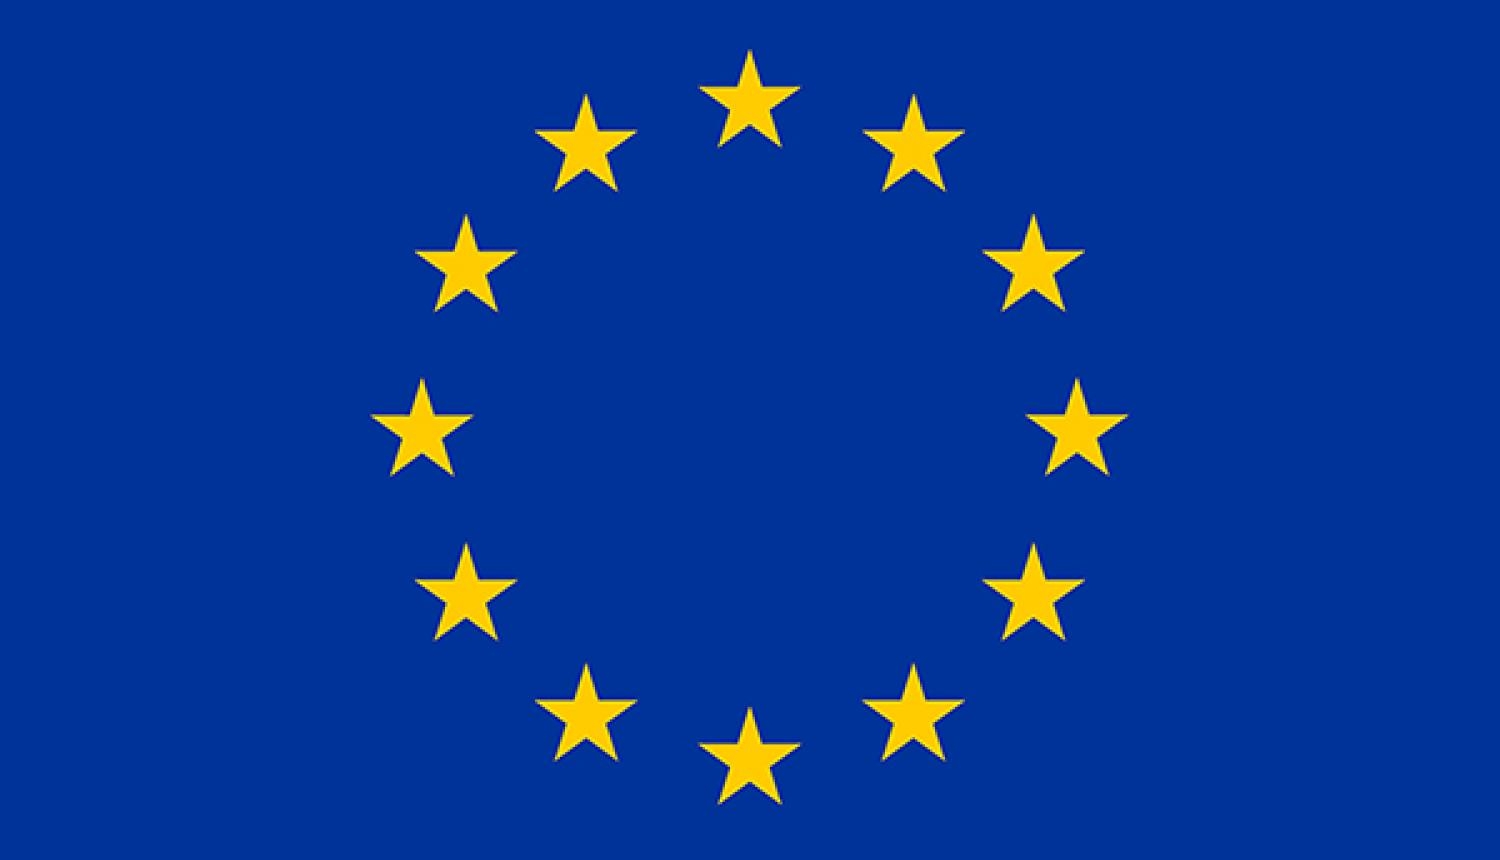 Eiropas karogs